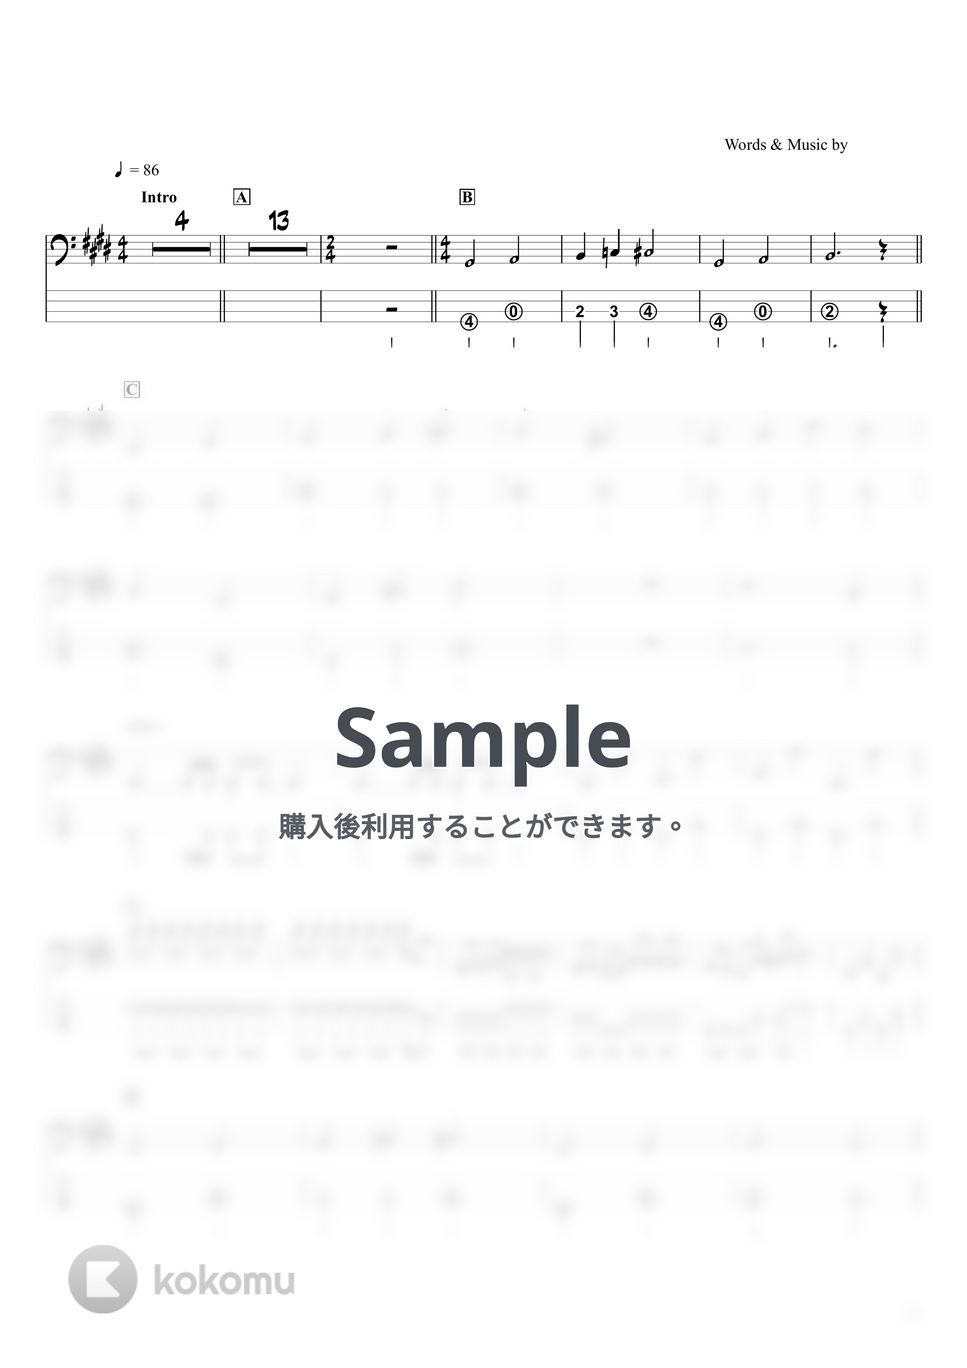 マカロニえんぴつ - なんでもないよ、 (ベースTAB譜☆4弦ベース対応) by swbass